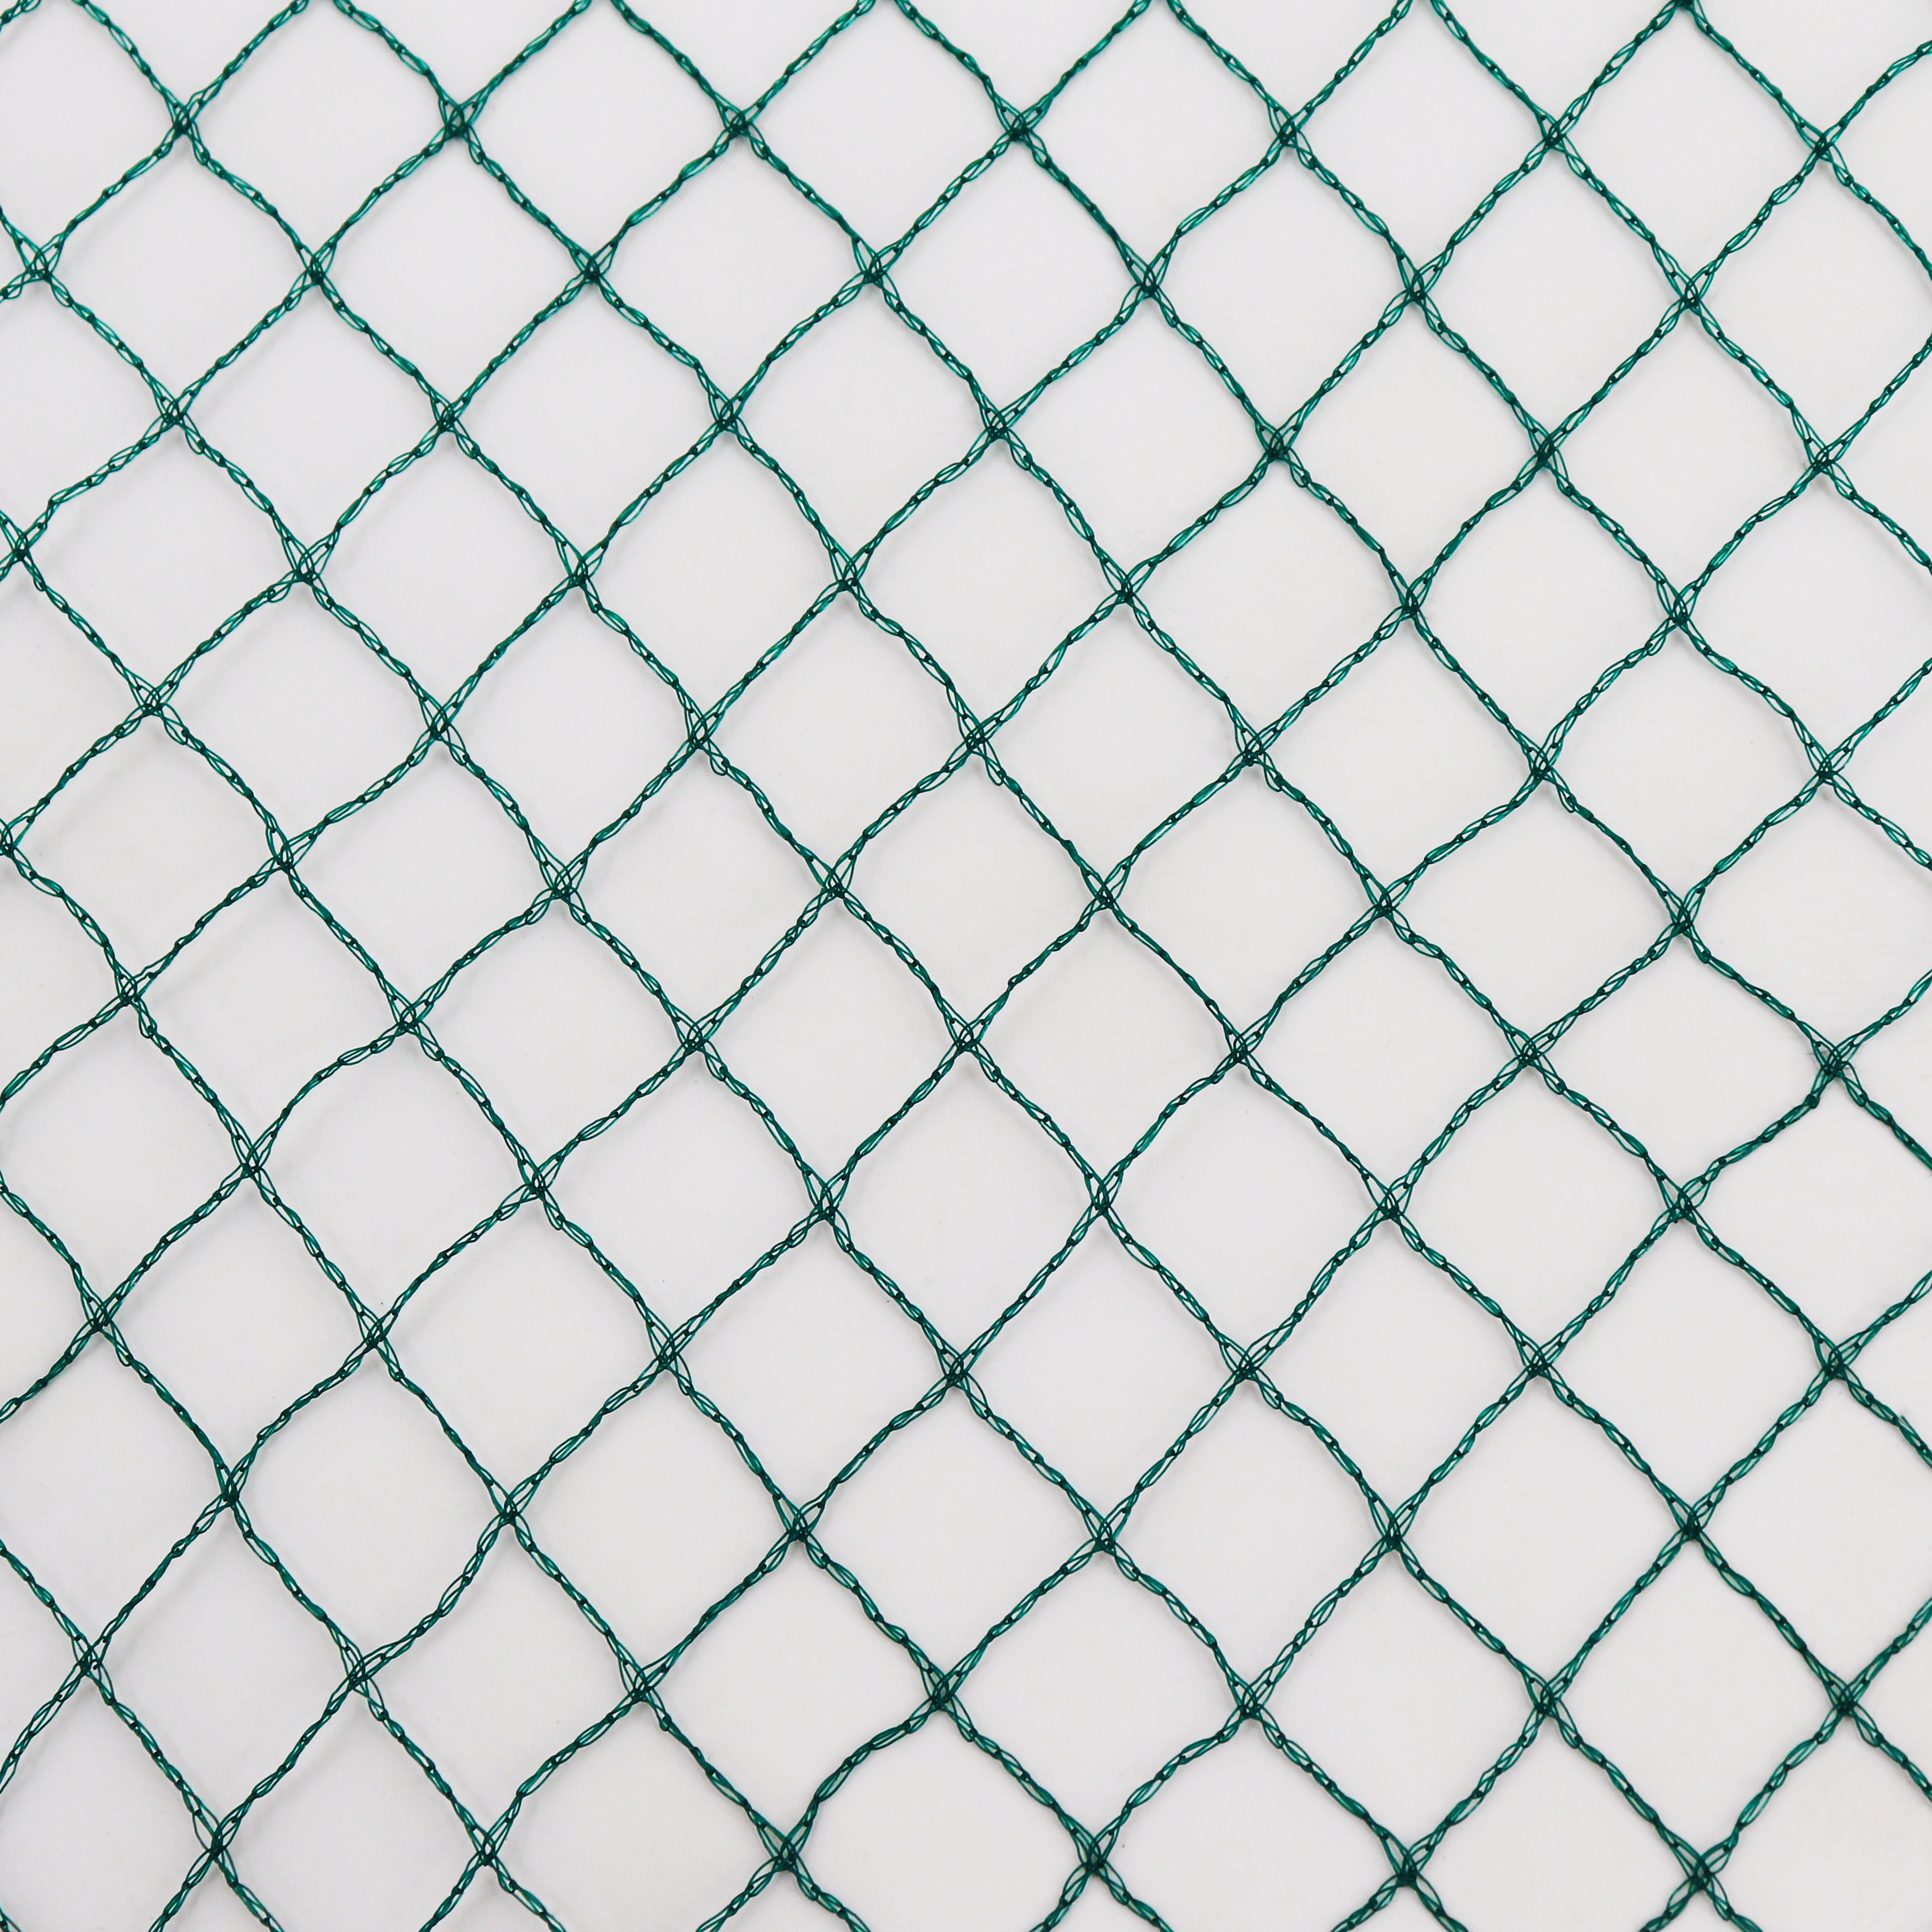 Vogelschutznetz Laubschutznetz Gartennetz Teichnetz 4 x 5m Masche 15x15 mm